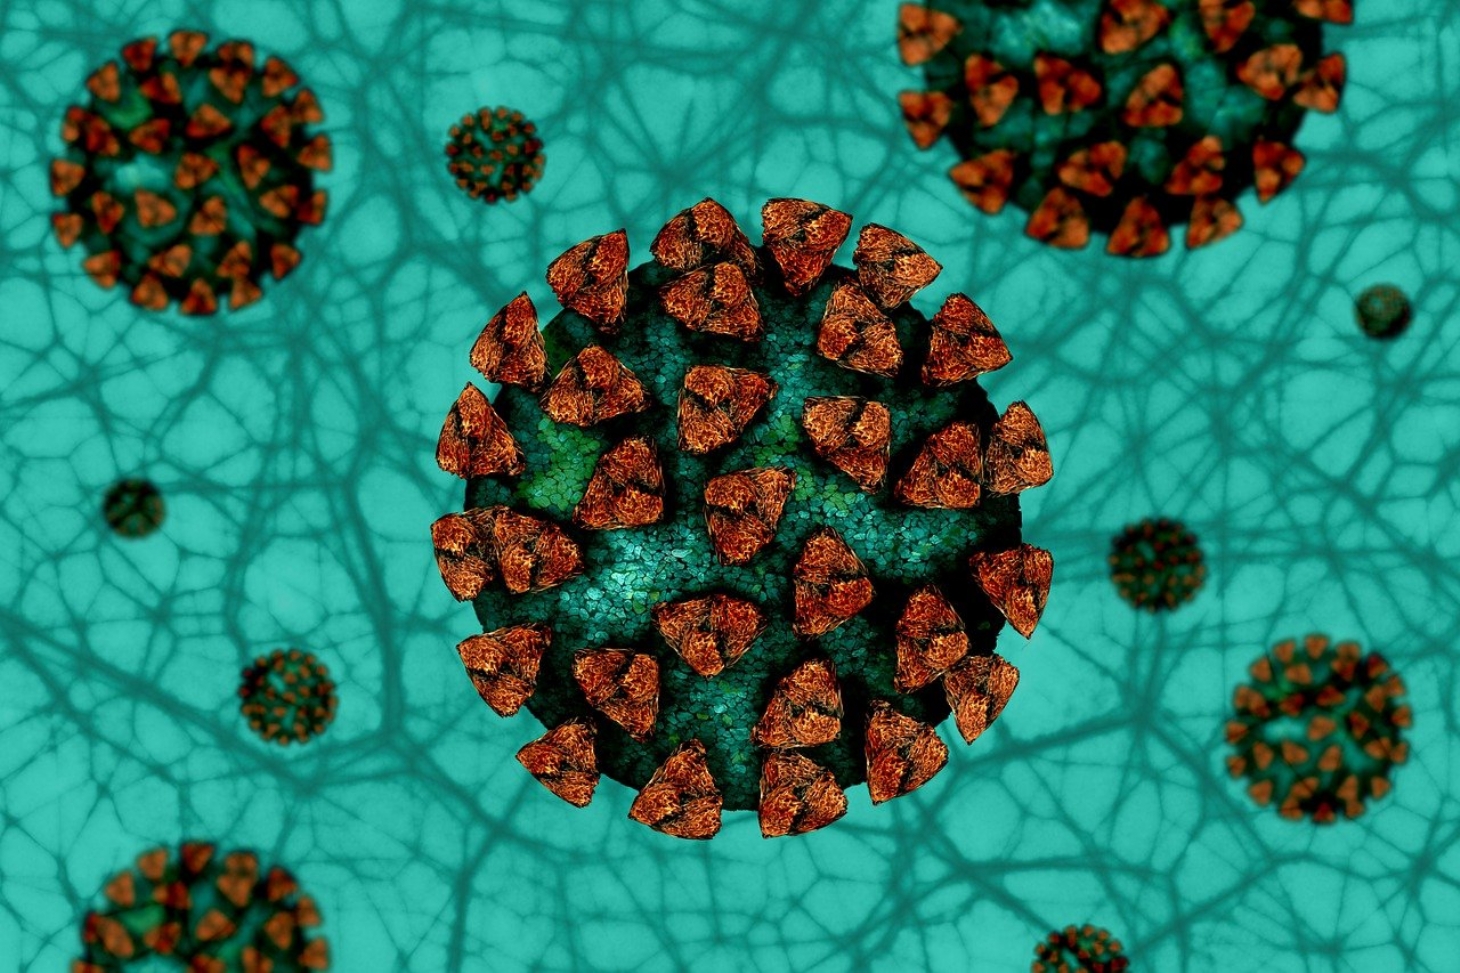 Novo coronavírus se replica em glândulas salivares, mostra pesquisa da USP | Jornal da Orla